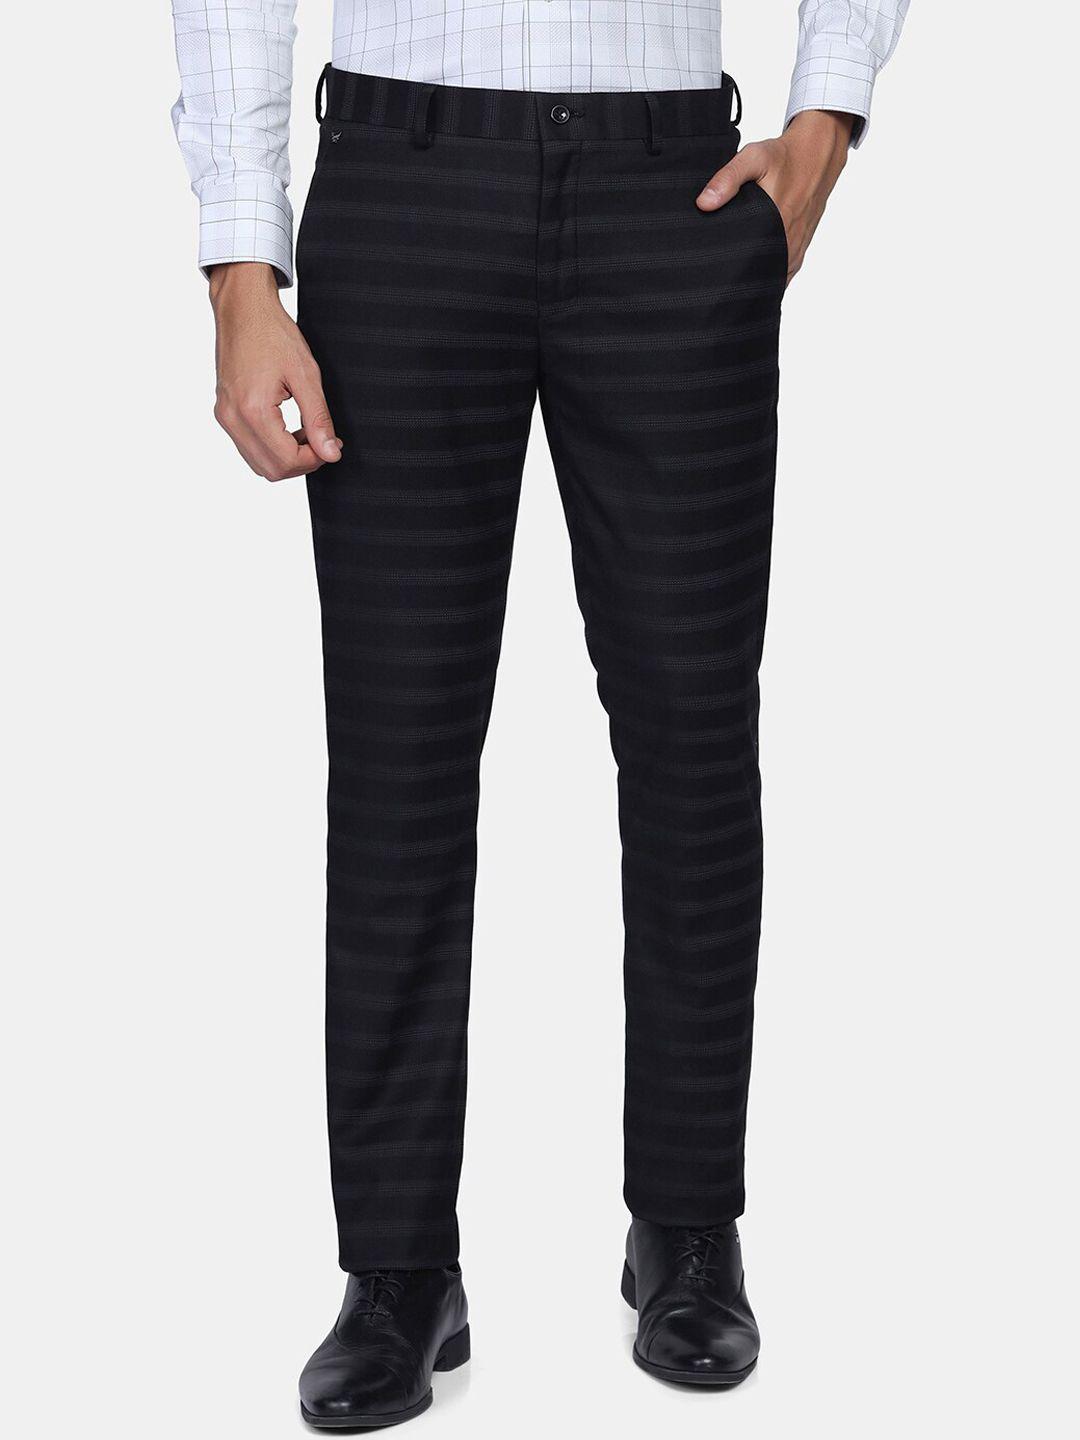 blackberrys-men-black-striped-slim-fit-low-rise-trousers